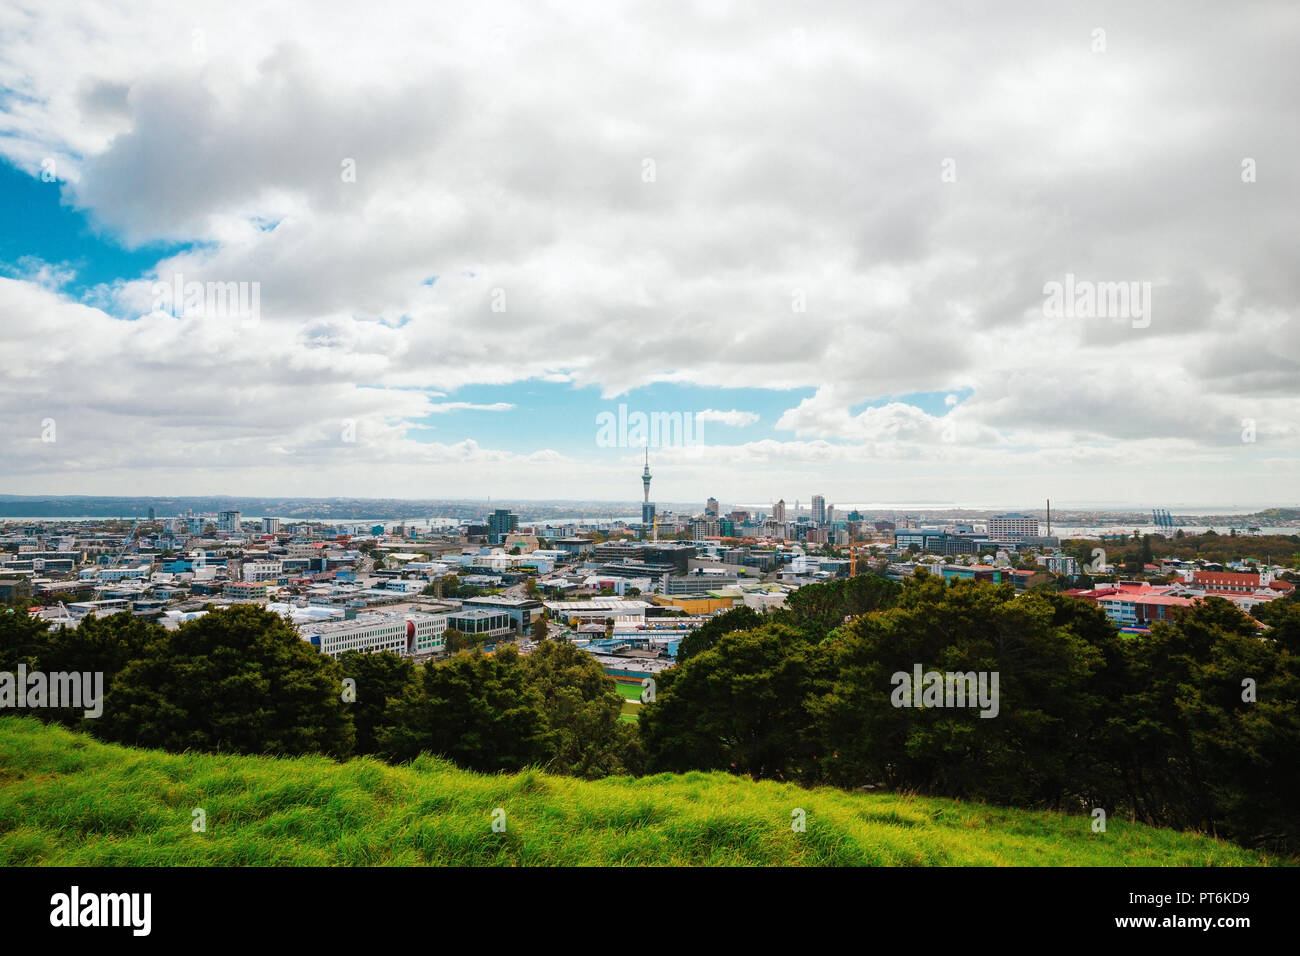 Auckland vista desde el Monte Eden con una persona caminando por el camino hacia la ciudad, Nueva Zelanda Foto de stock